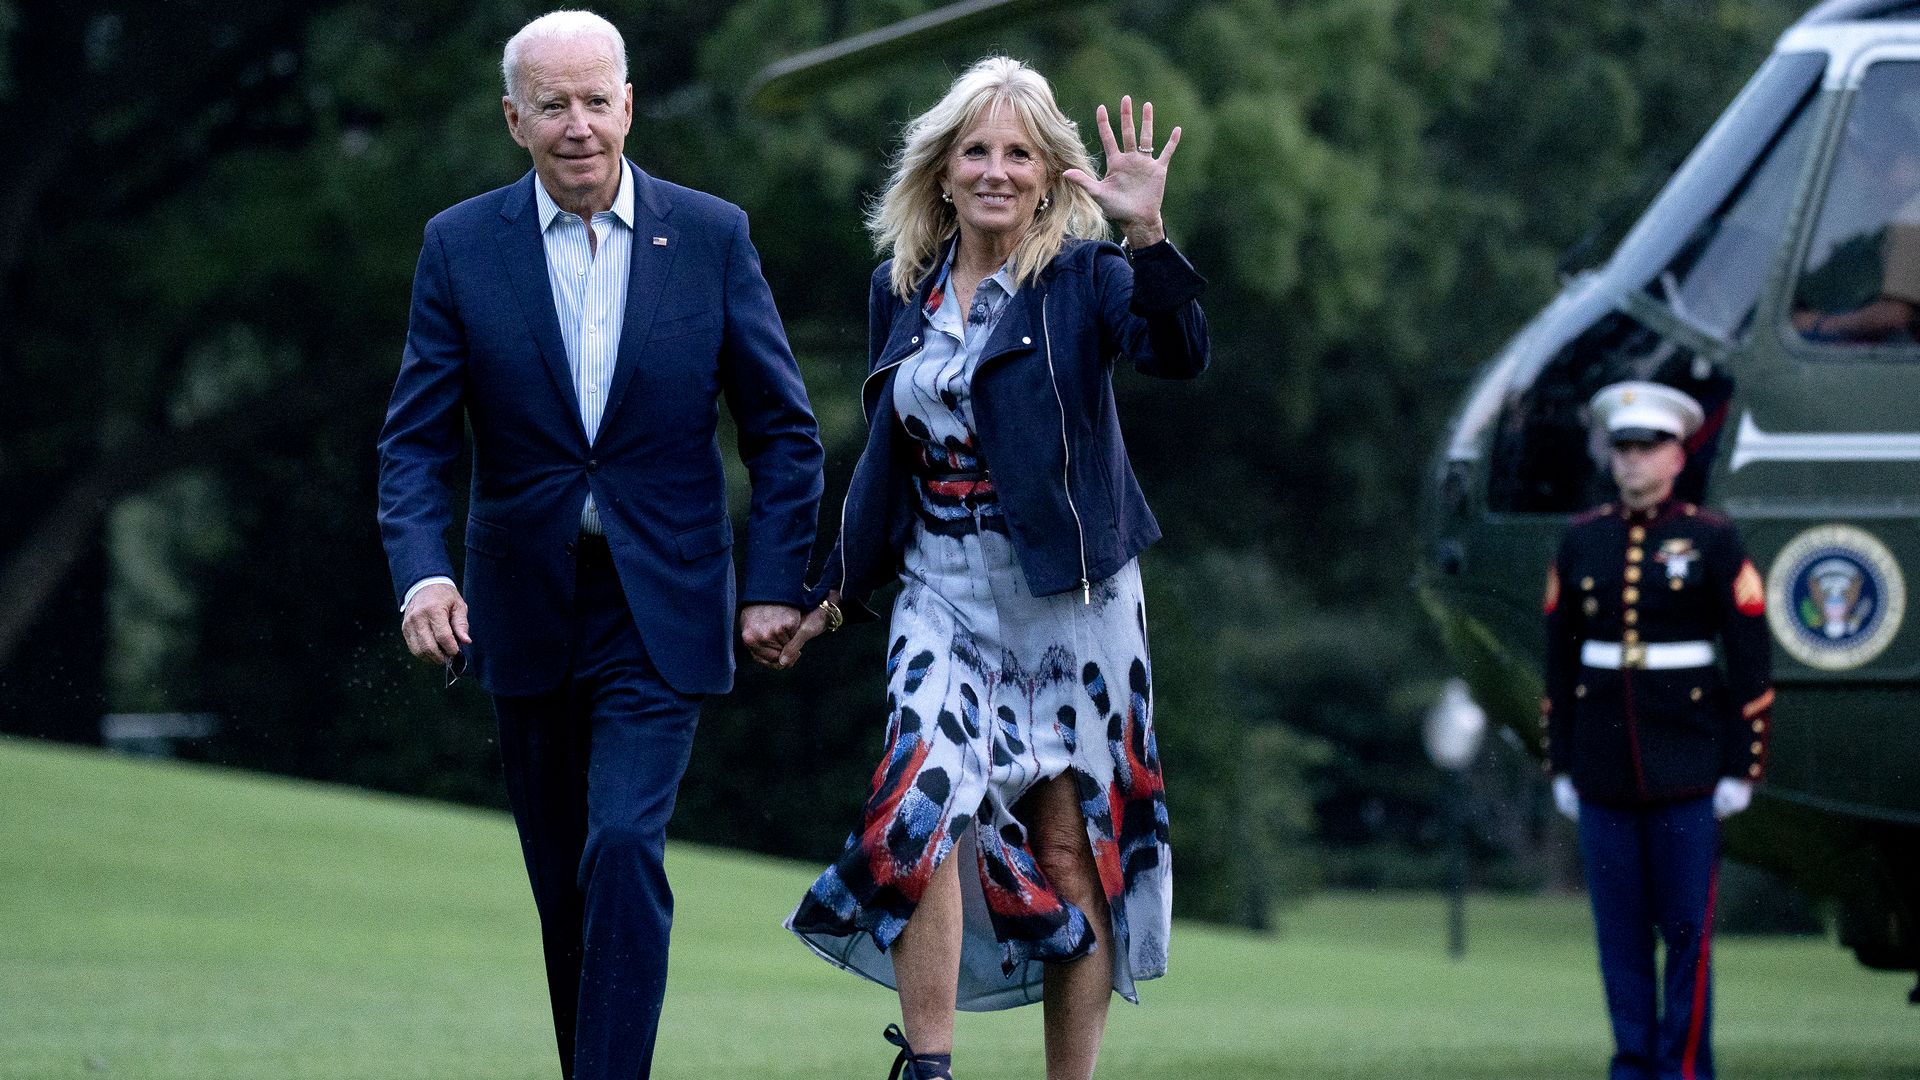 Joe and Jill Biden walk hand in hand